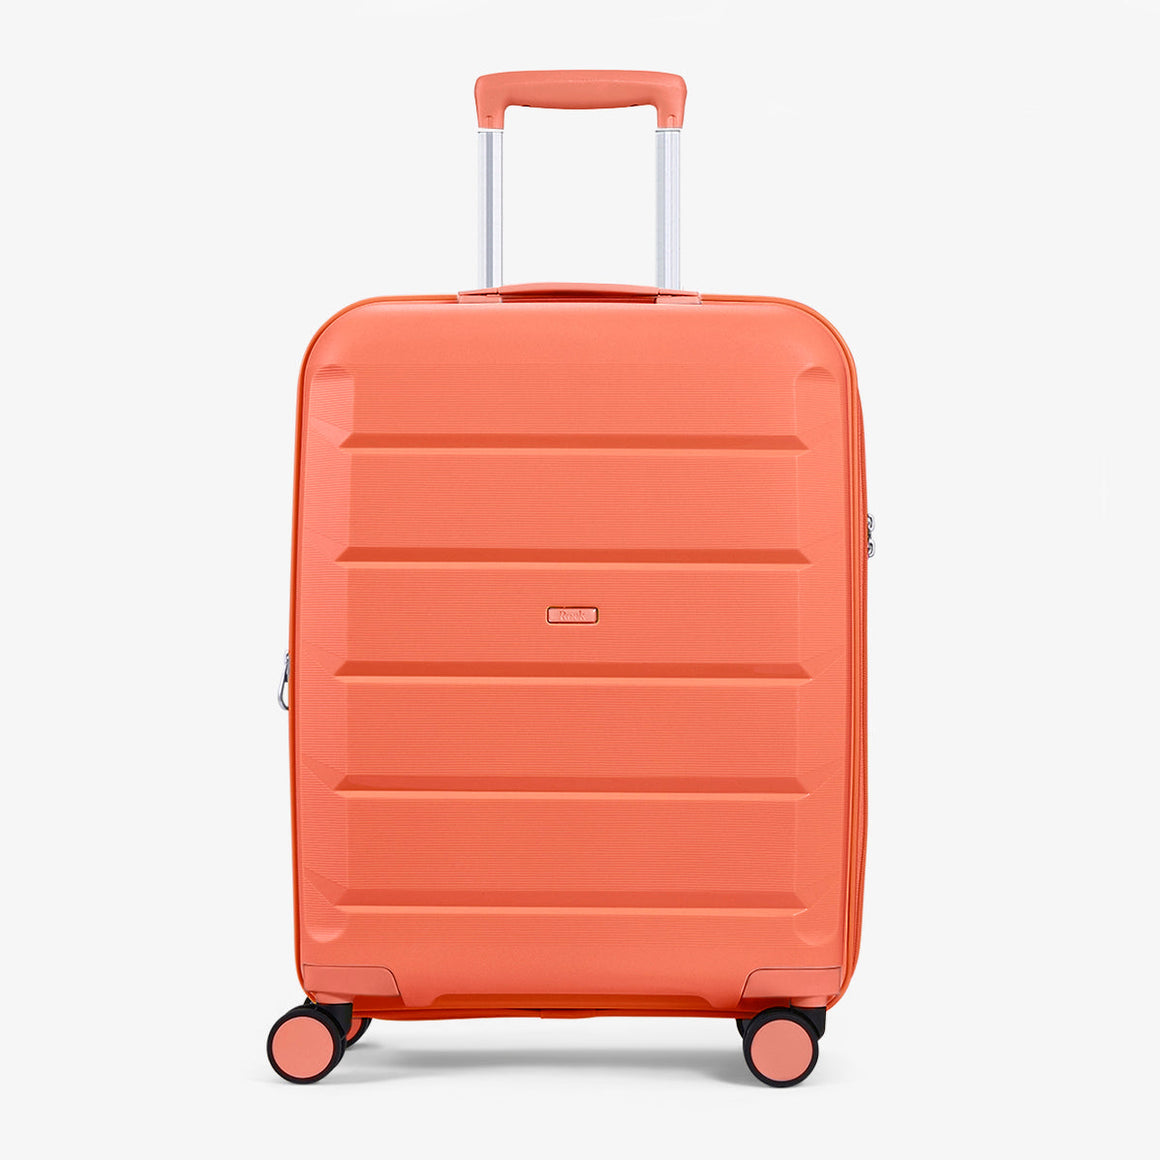 Tulum Small Suitcase in Peach